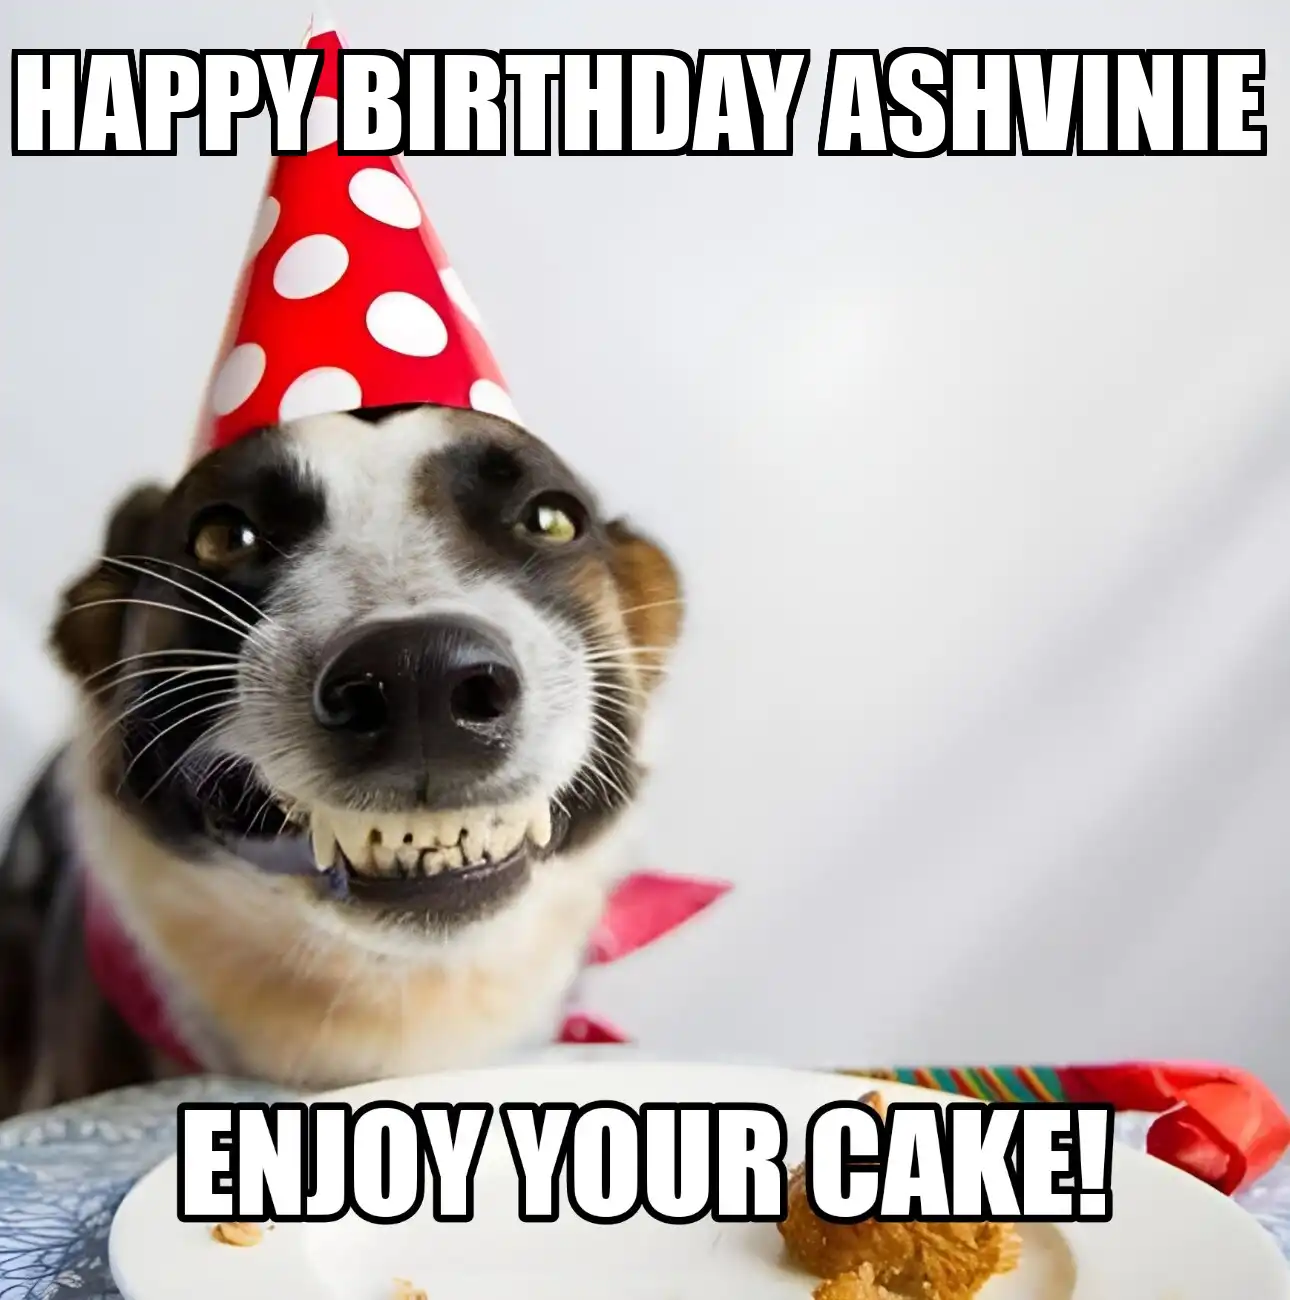 Happy Birthday Ashvinie Enjoy Your Cake Dog Meme